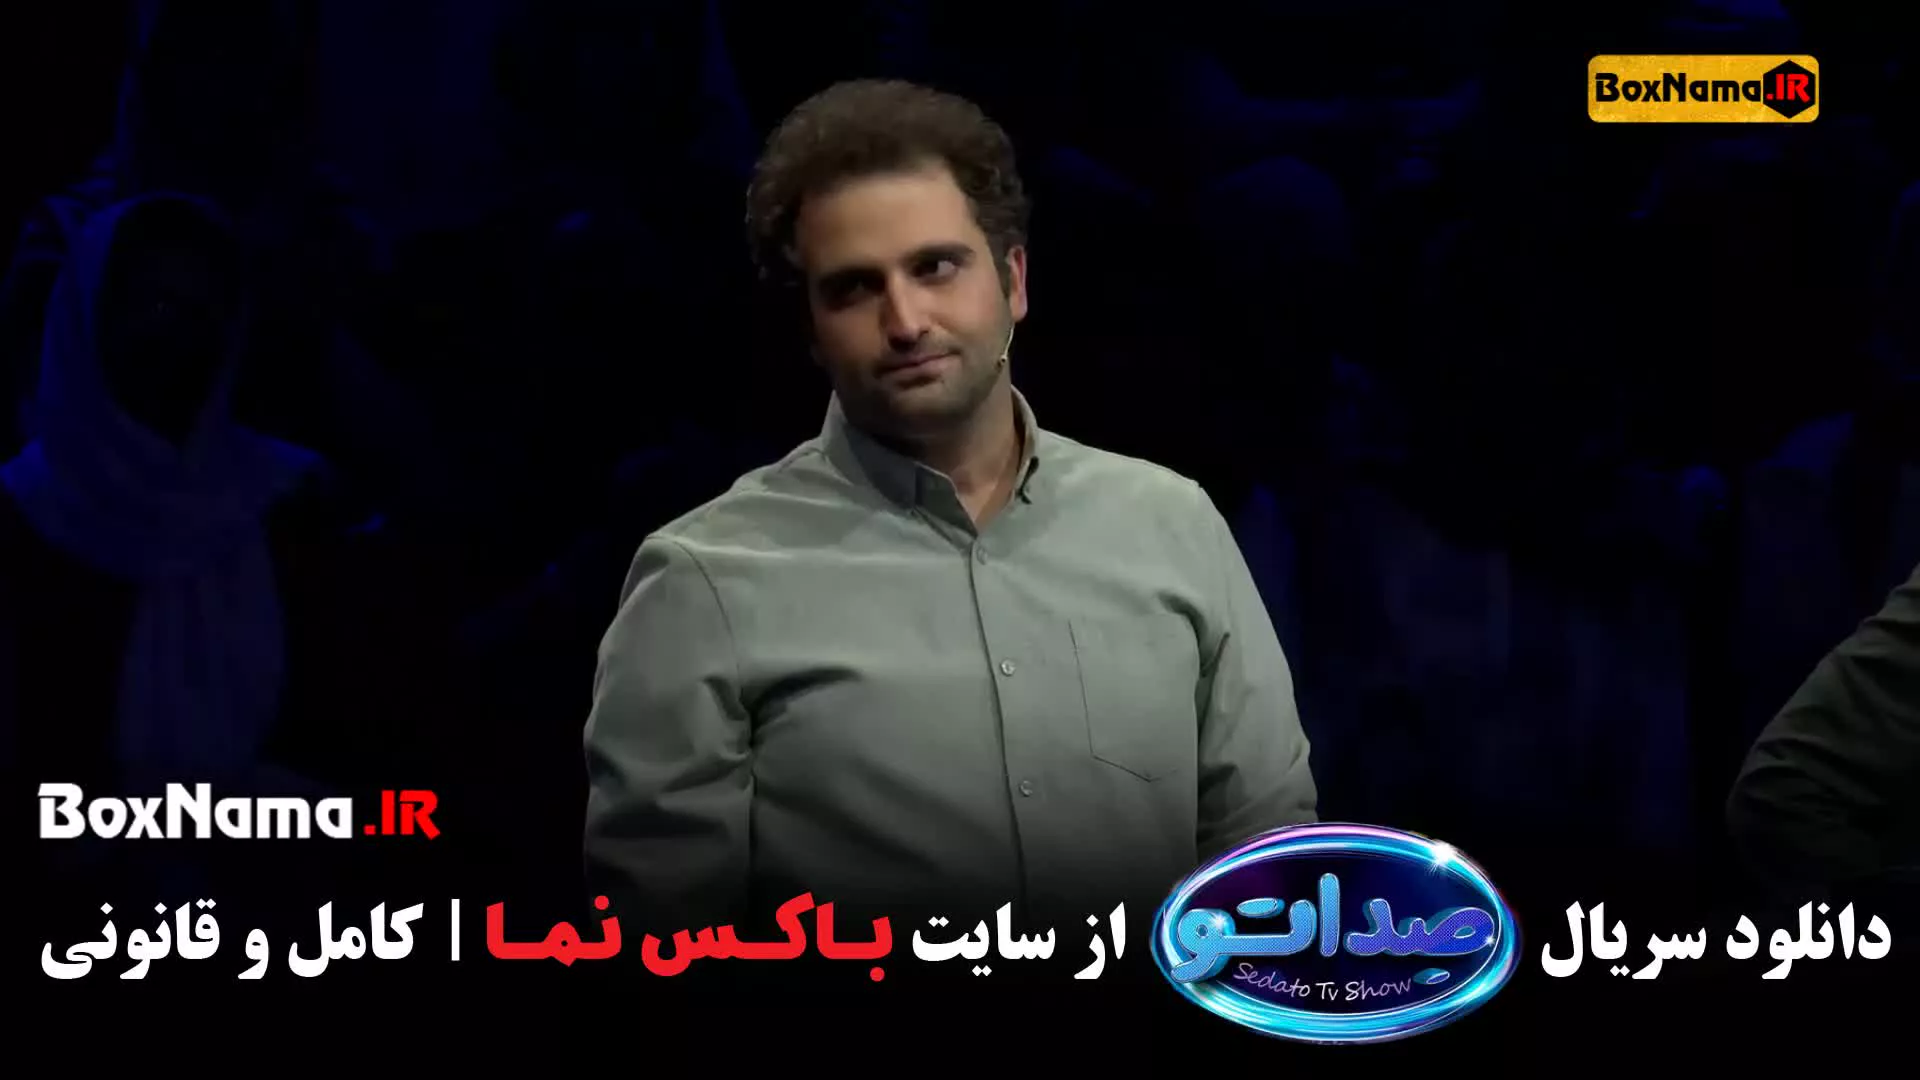 قسمت ۷ سریال صداتو برنامه هیجان انگیز و جدید محسن کیایی